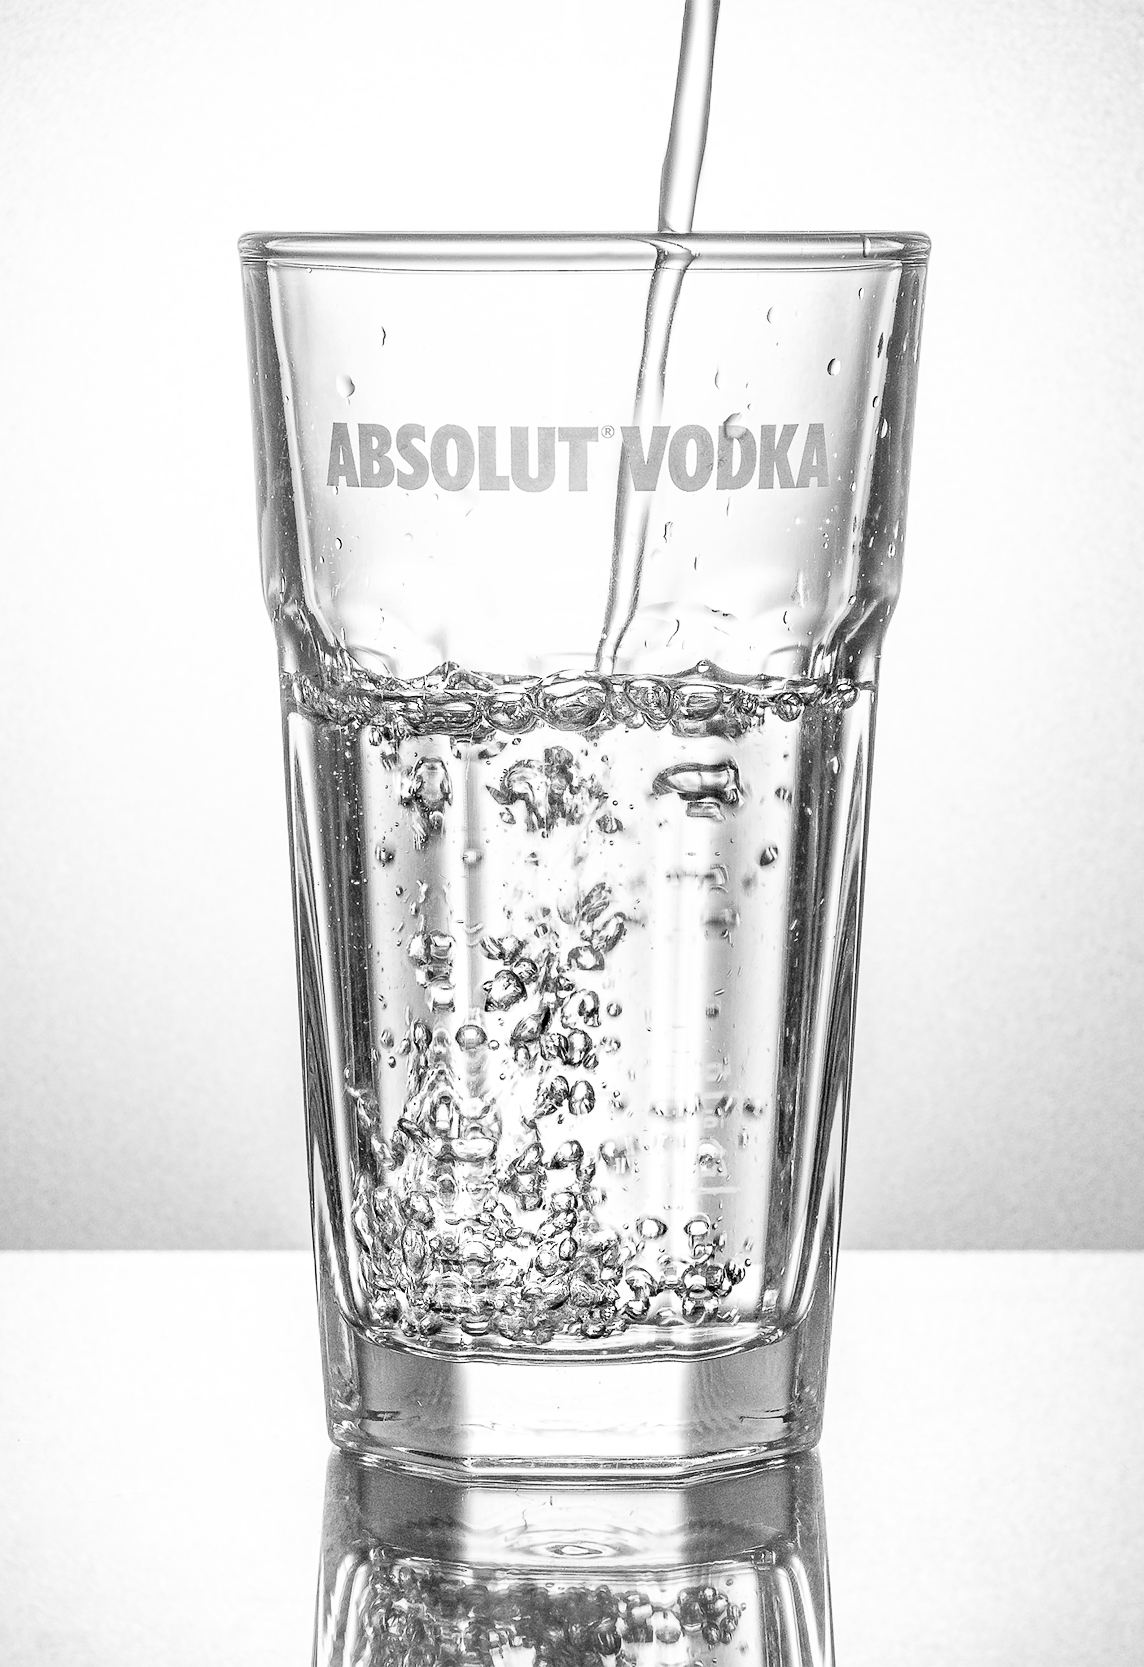 Produktfoto: Eine transparente Flüssigkeit fließt in ein Wodka-Glas